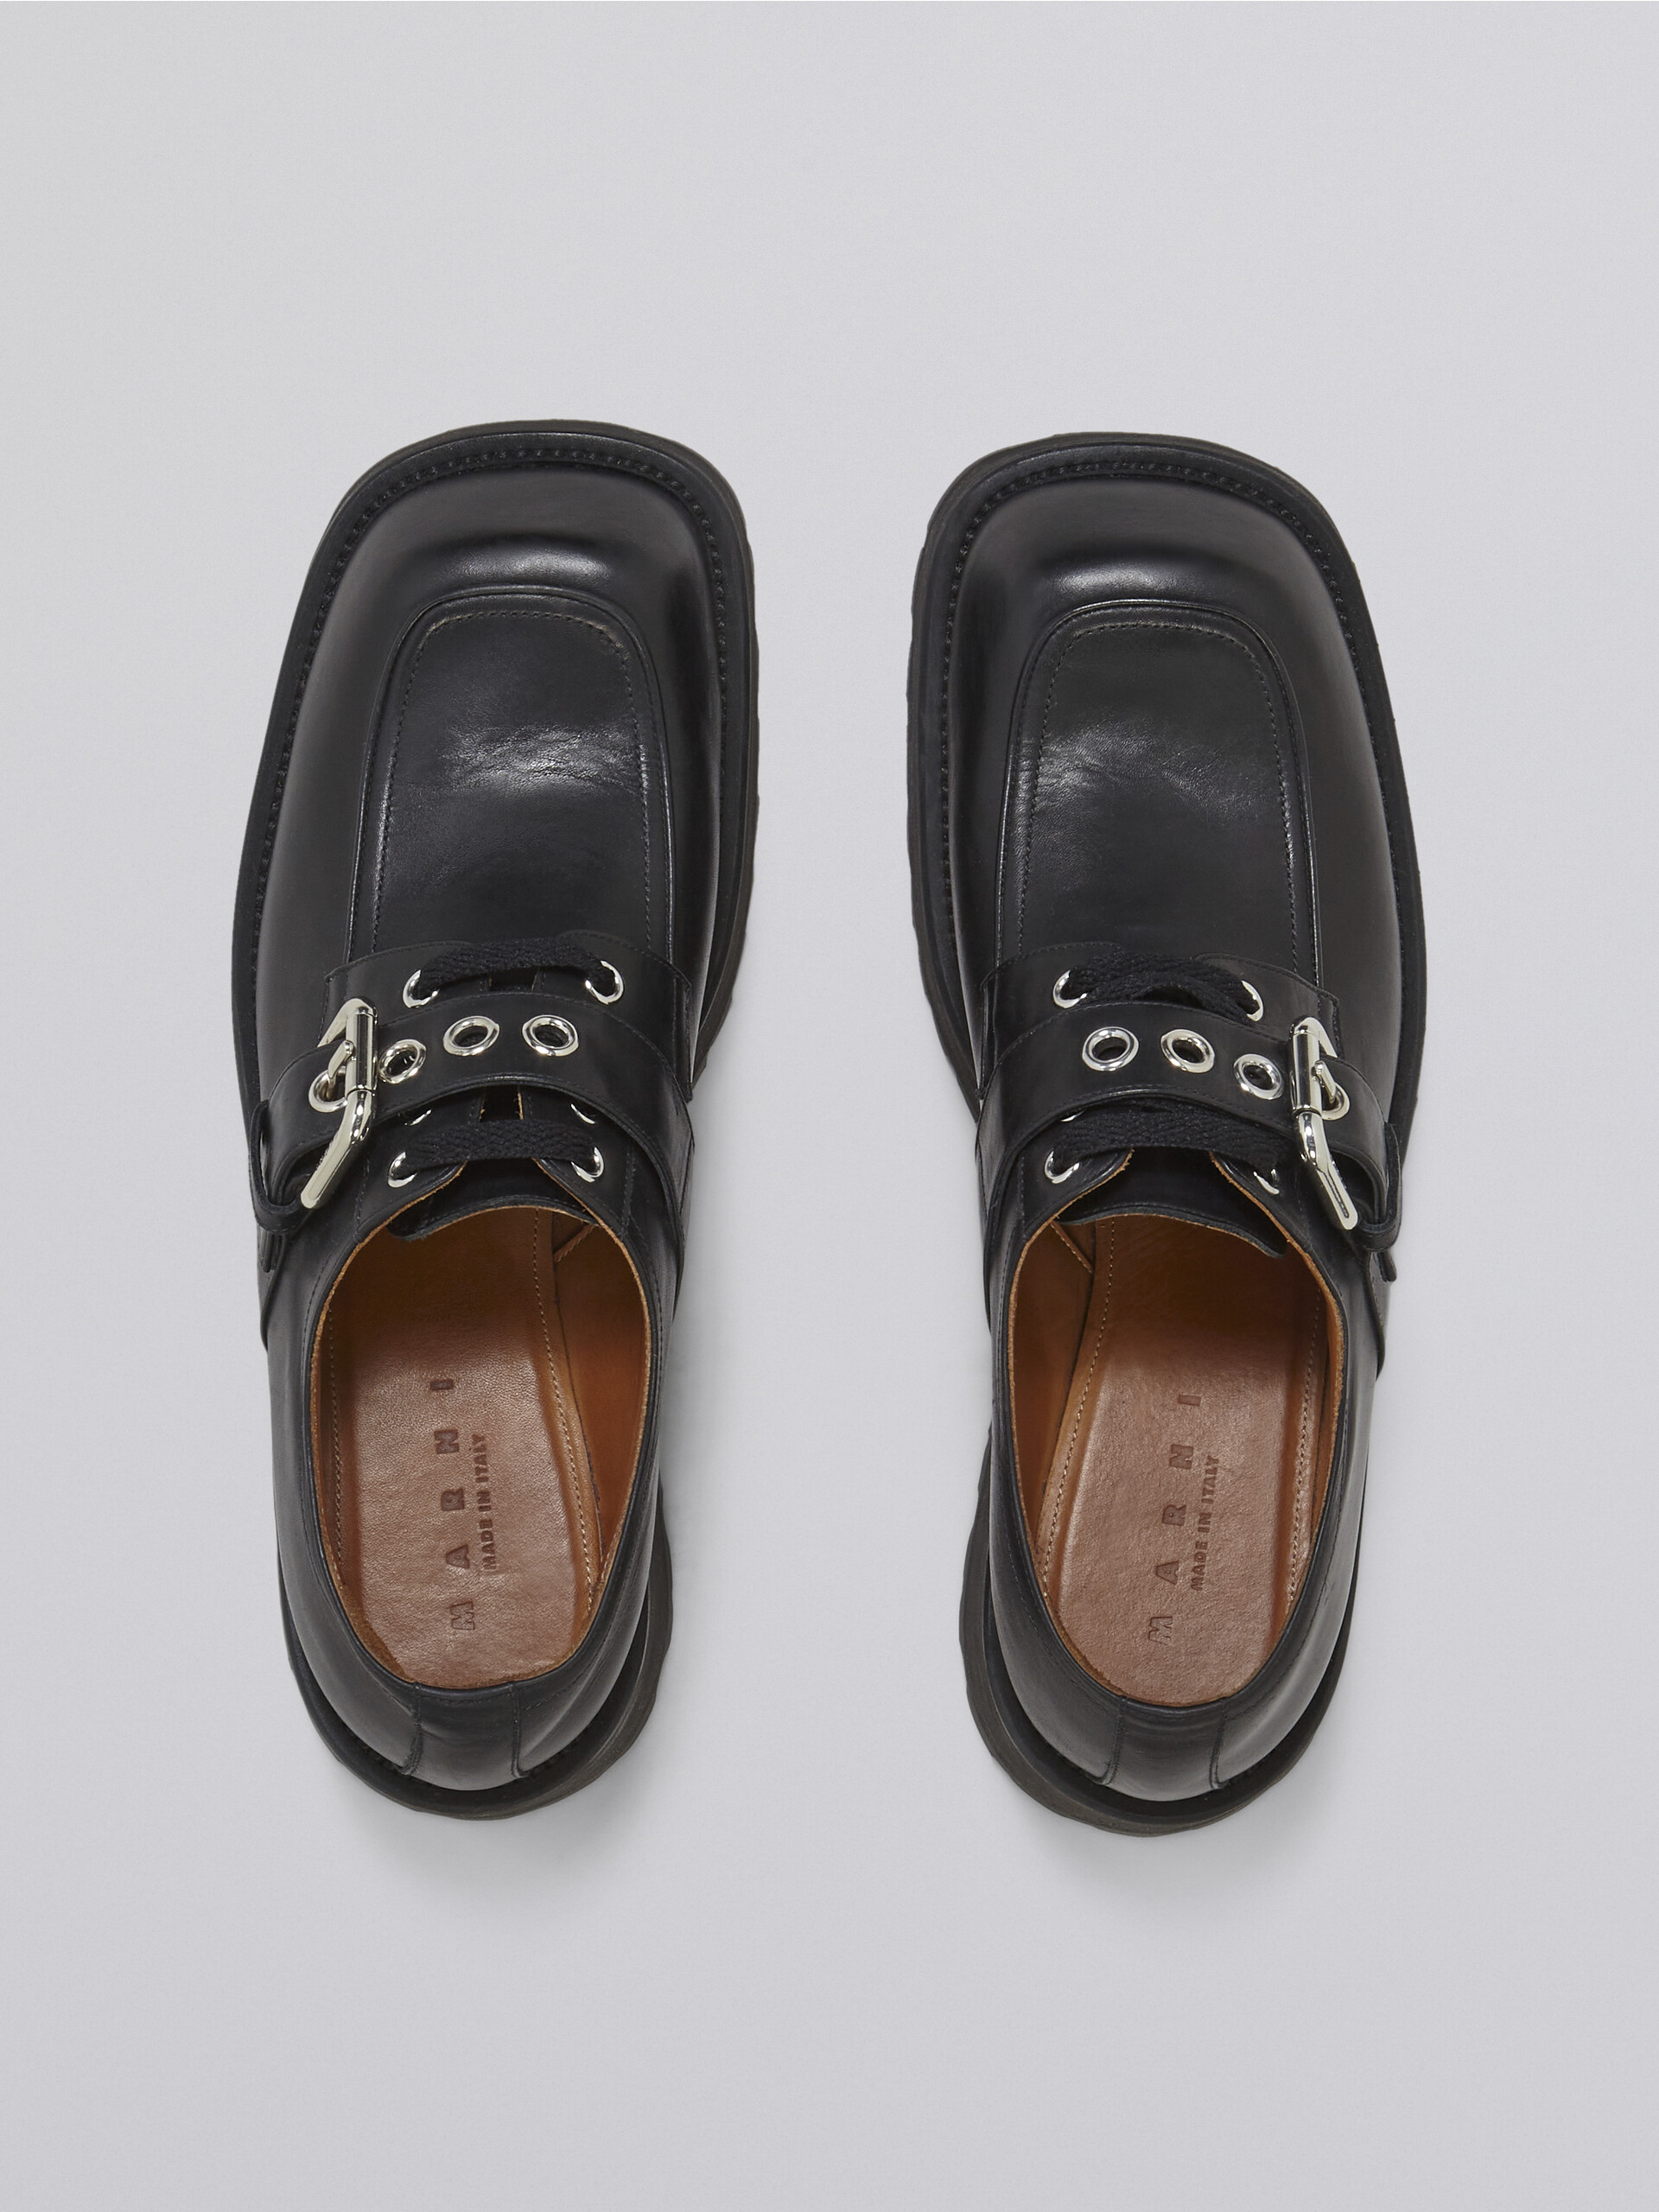 Mocassin en cuir de veau souple noir - Chaussures à Lacets - Image 4